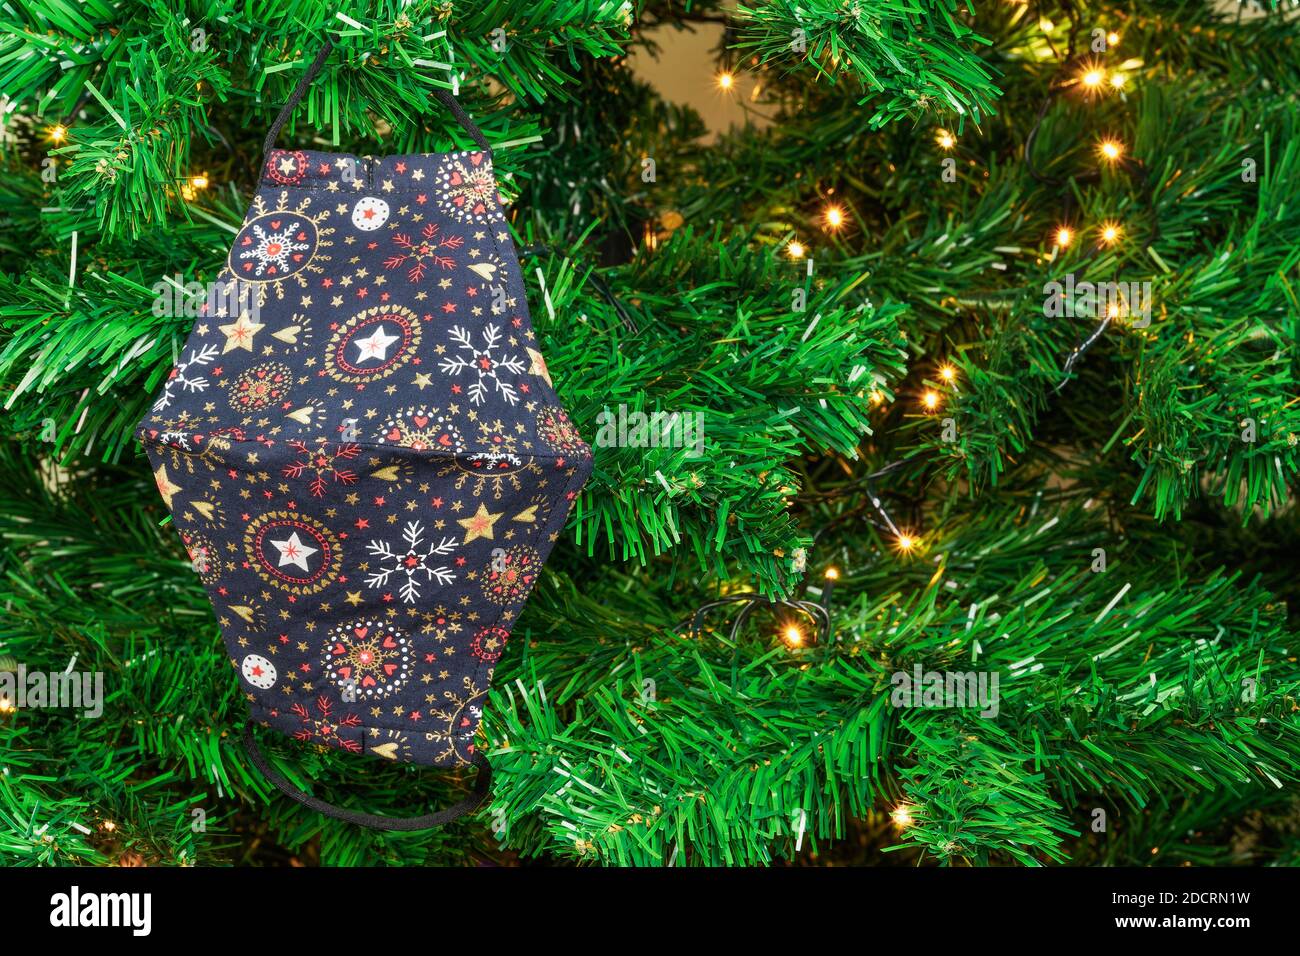 Natale covid-19 maschera appesa come decorazione su albero verde con luci. Il disegno di protezione del viso del coronavirus come ornamento stagionale all'albero artificiale. Foto Stock